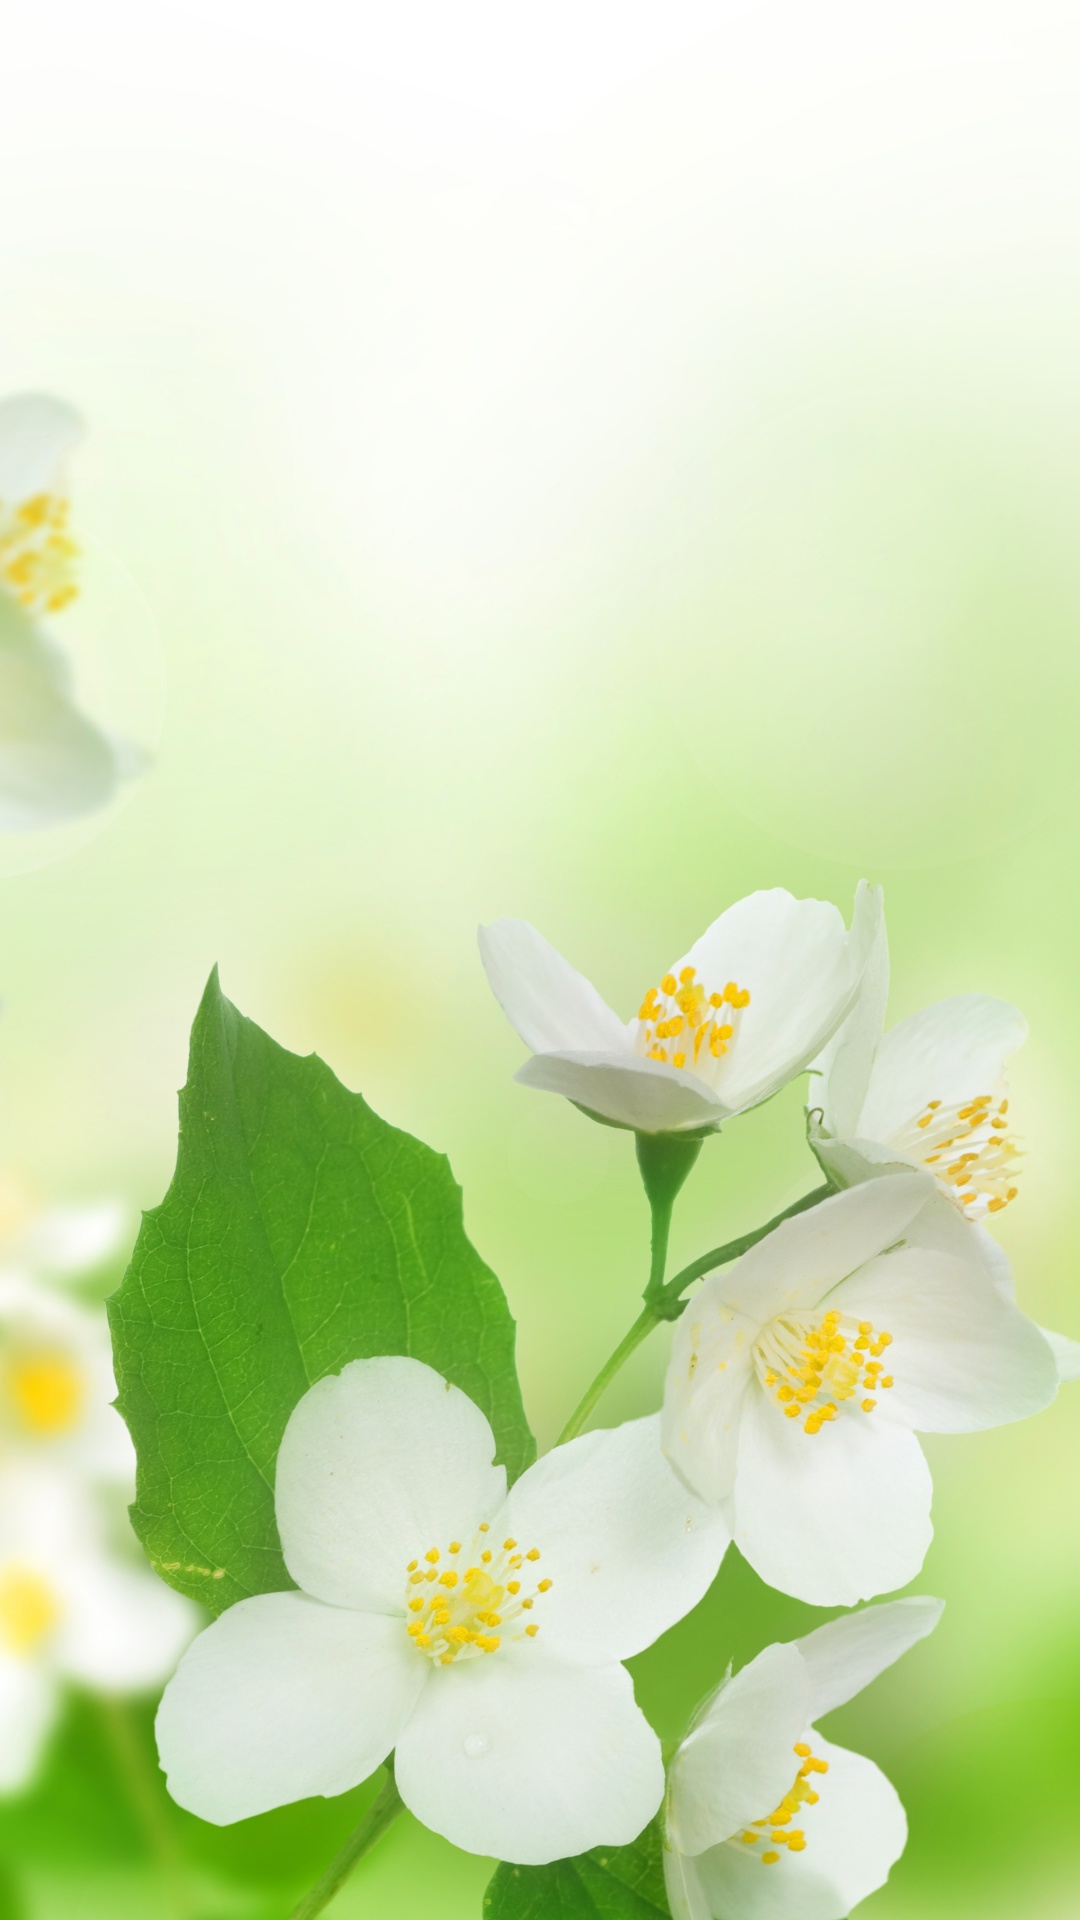 Das Jasmine delicate flower Wallpaper 1080x1920